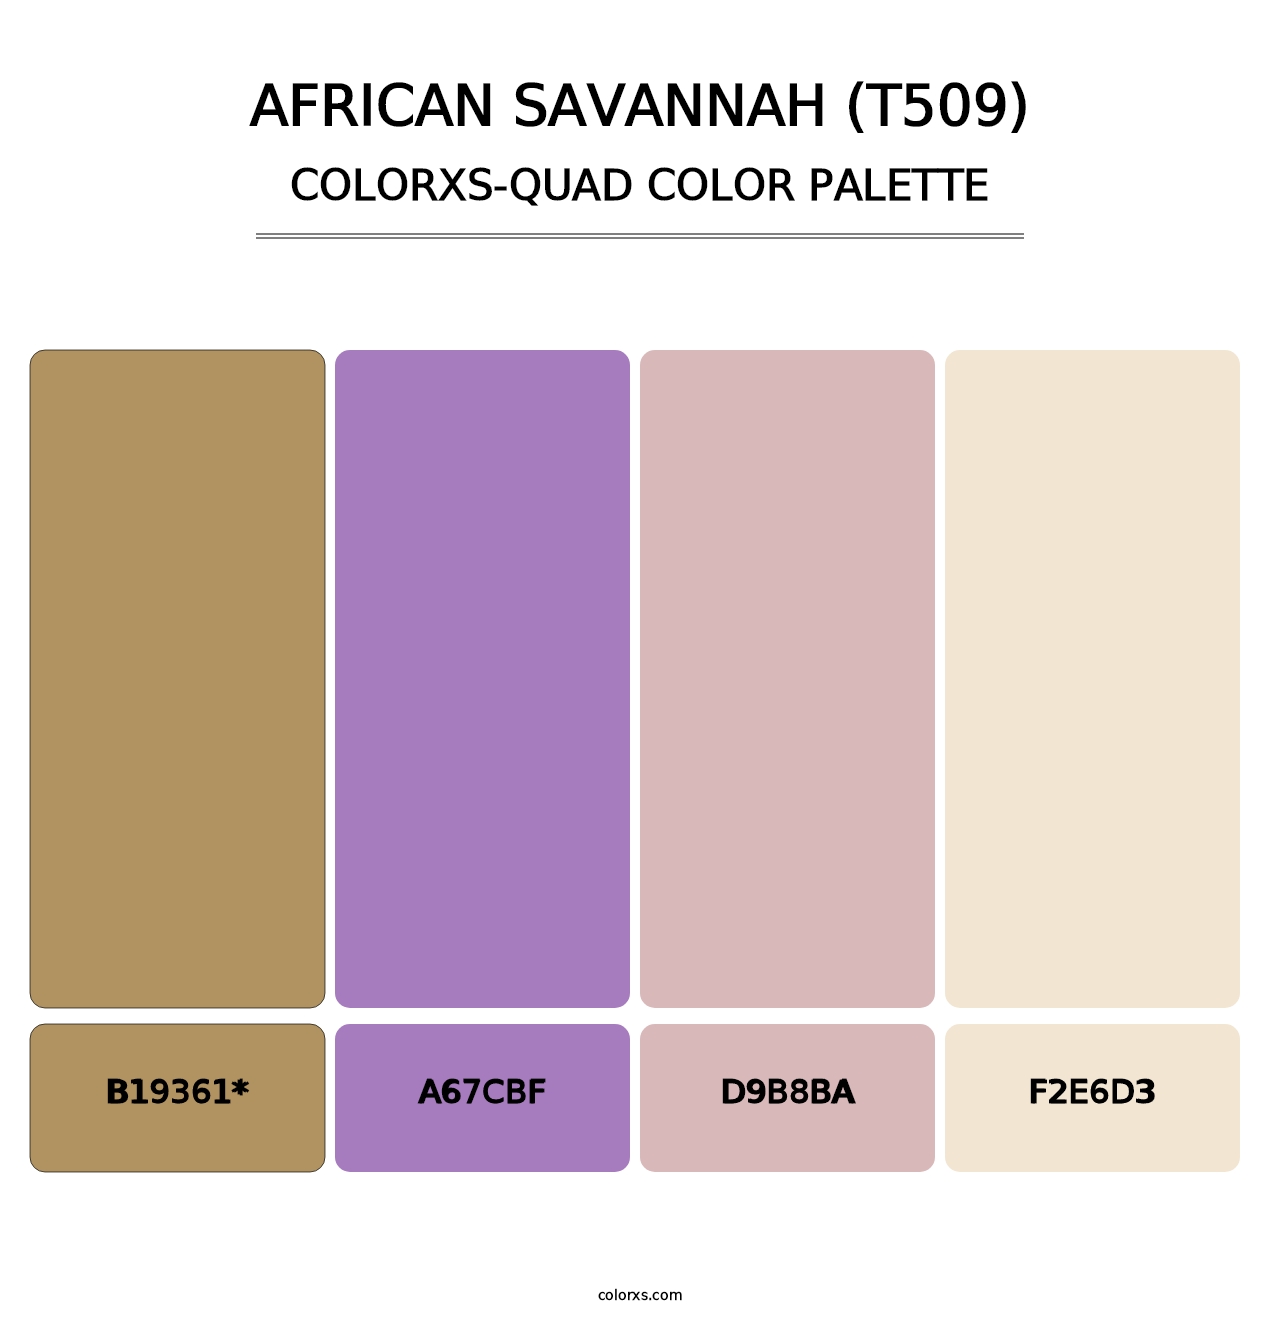 African Savannah (T509) - Colorxs Quad Palette